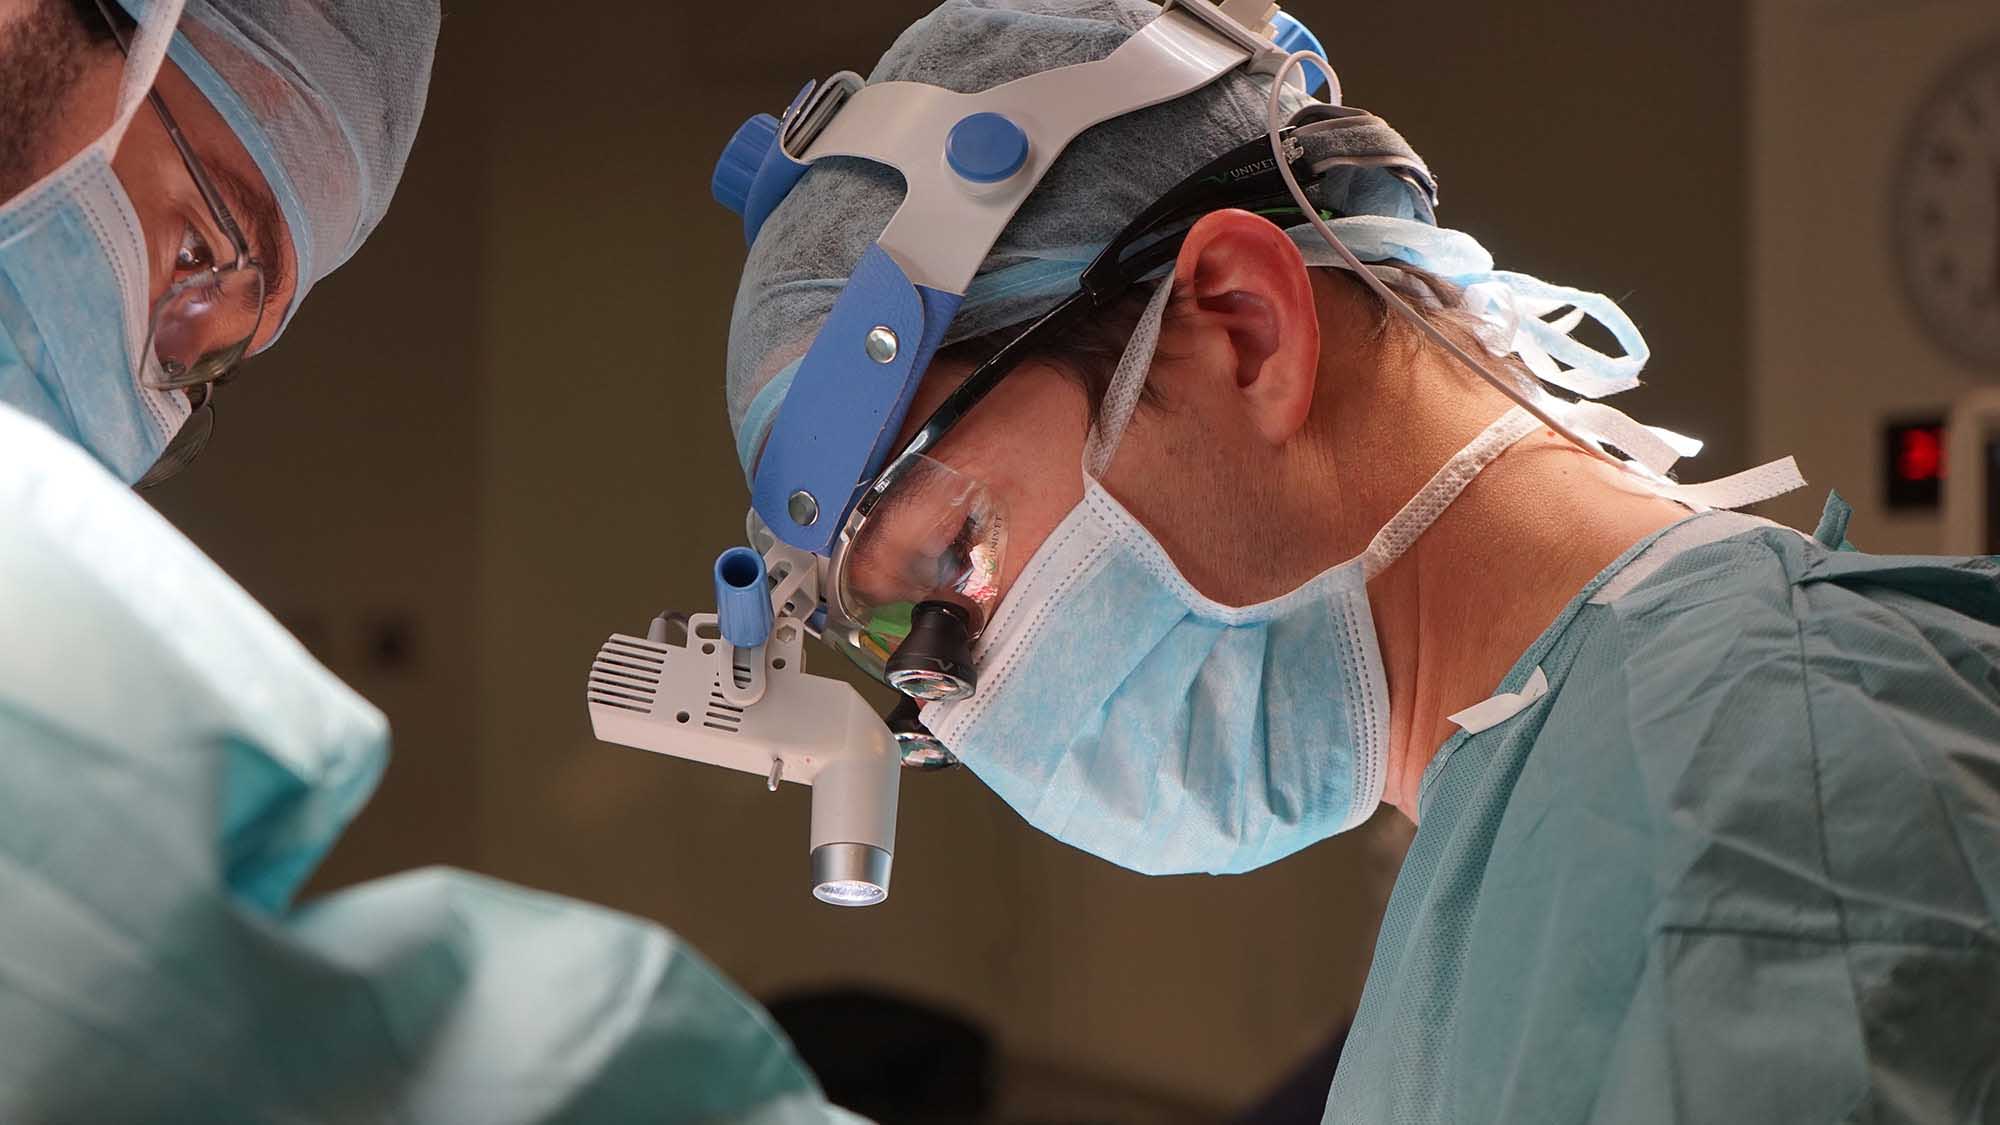 Dr. Macía performs a facial feminization surgery